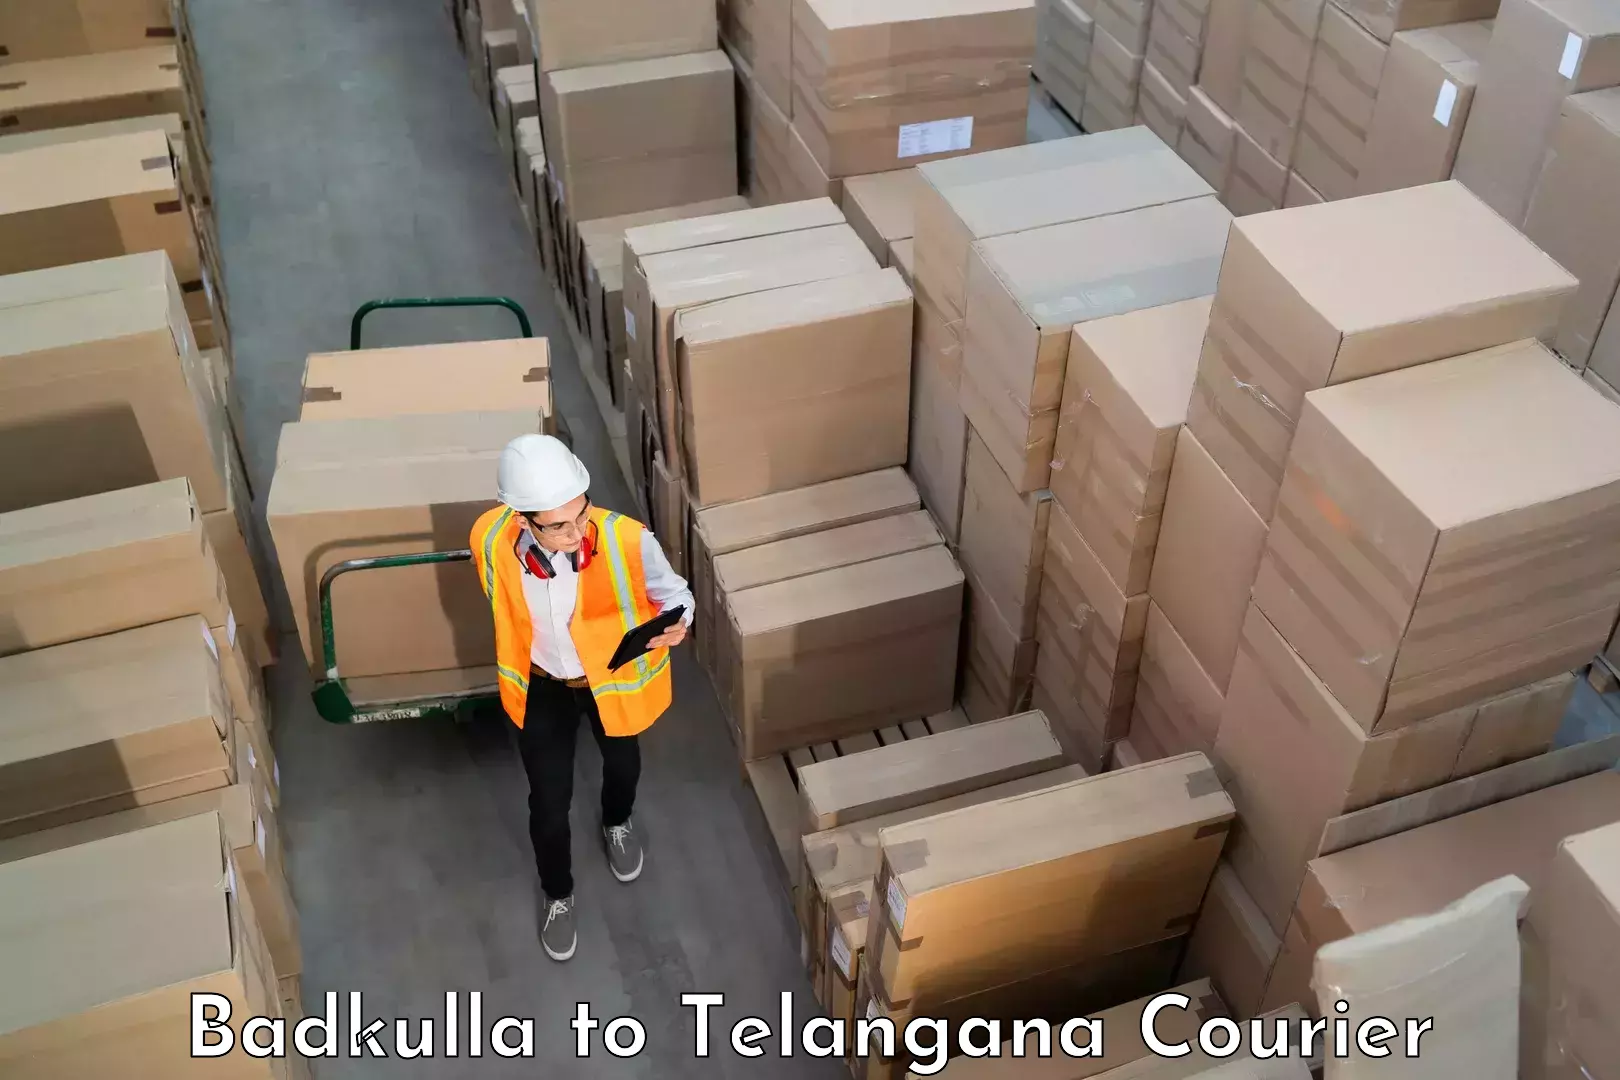 Baggage shipping advice Badkulla to Mudigonda